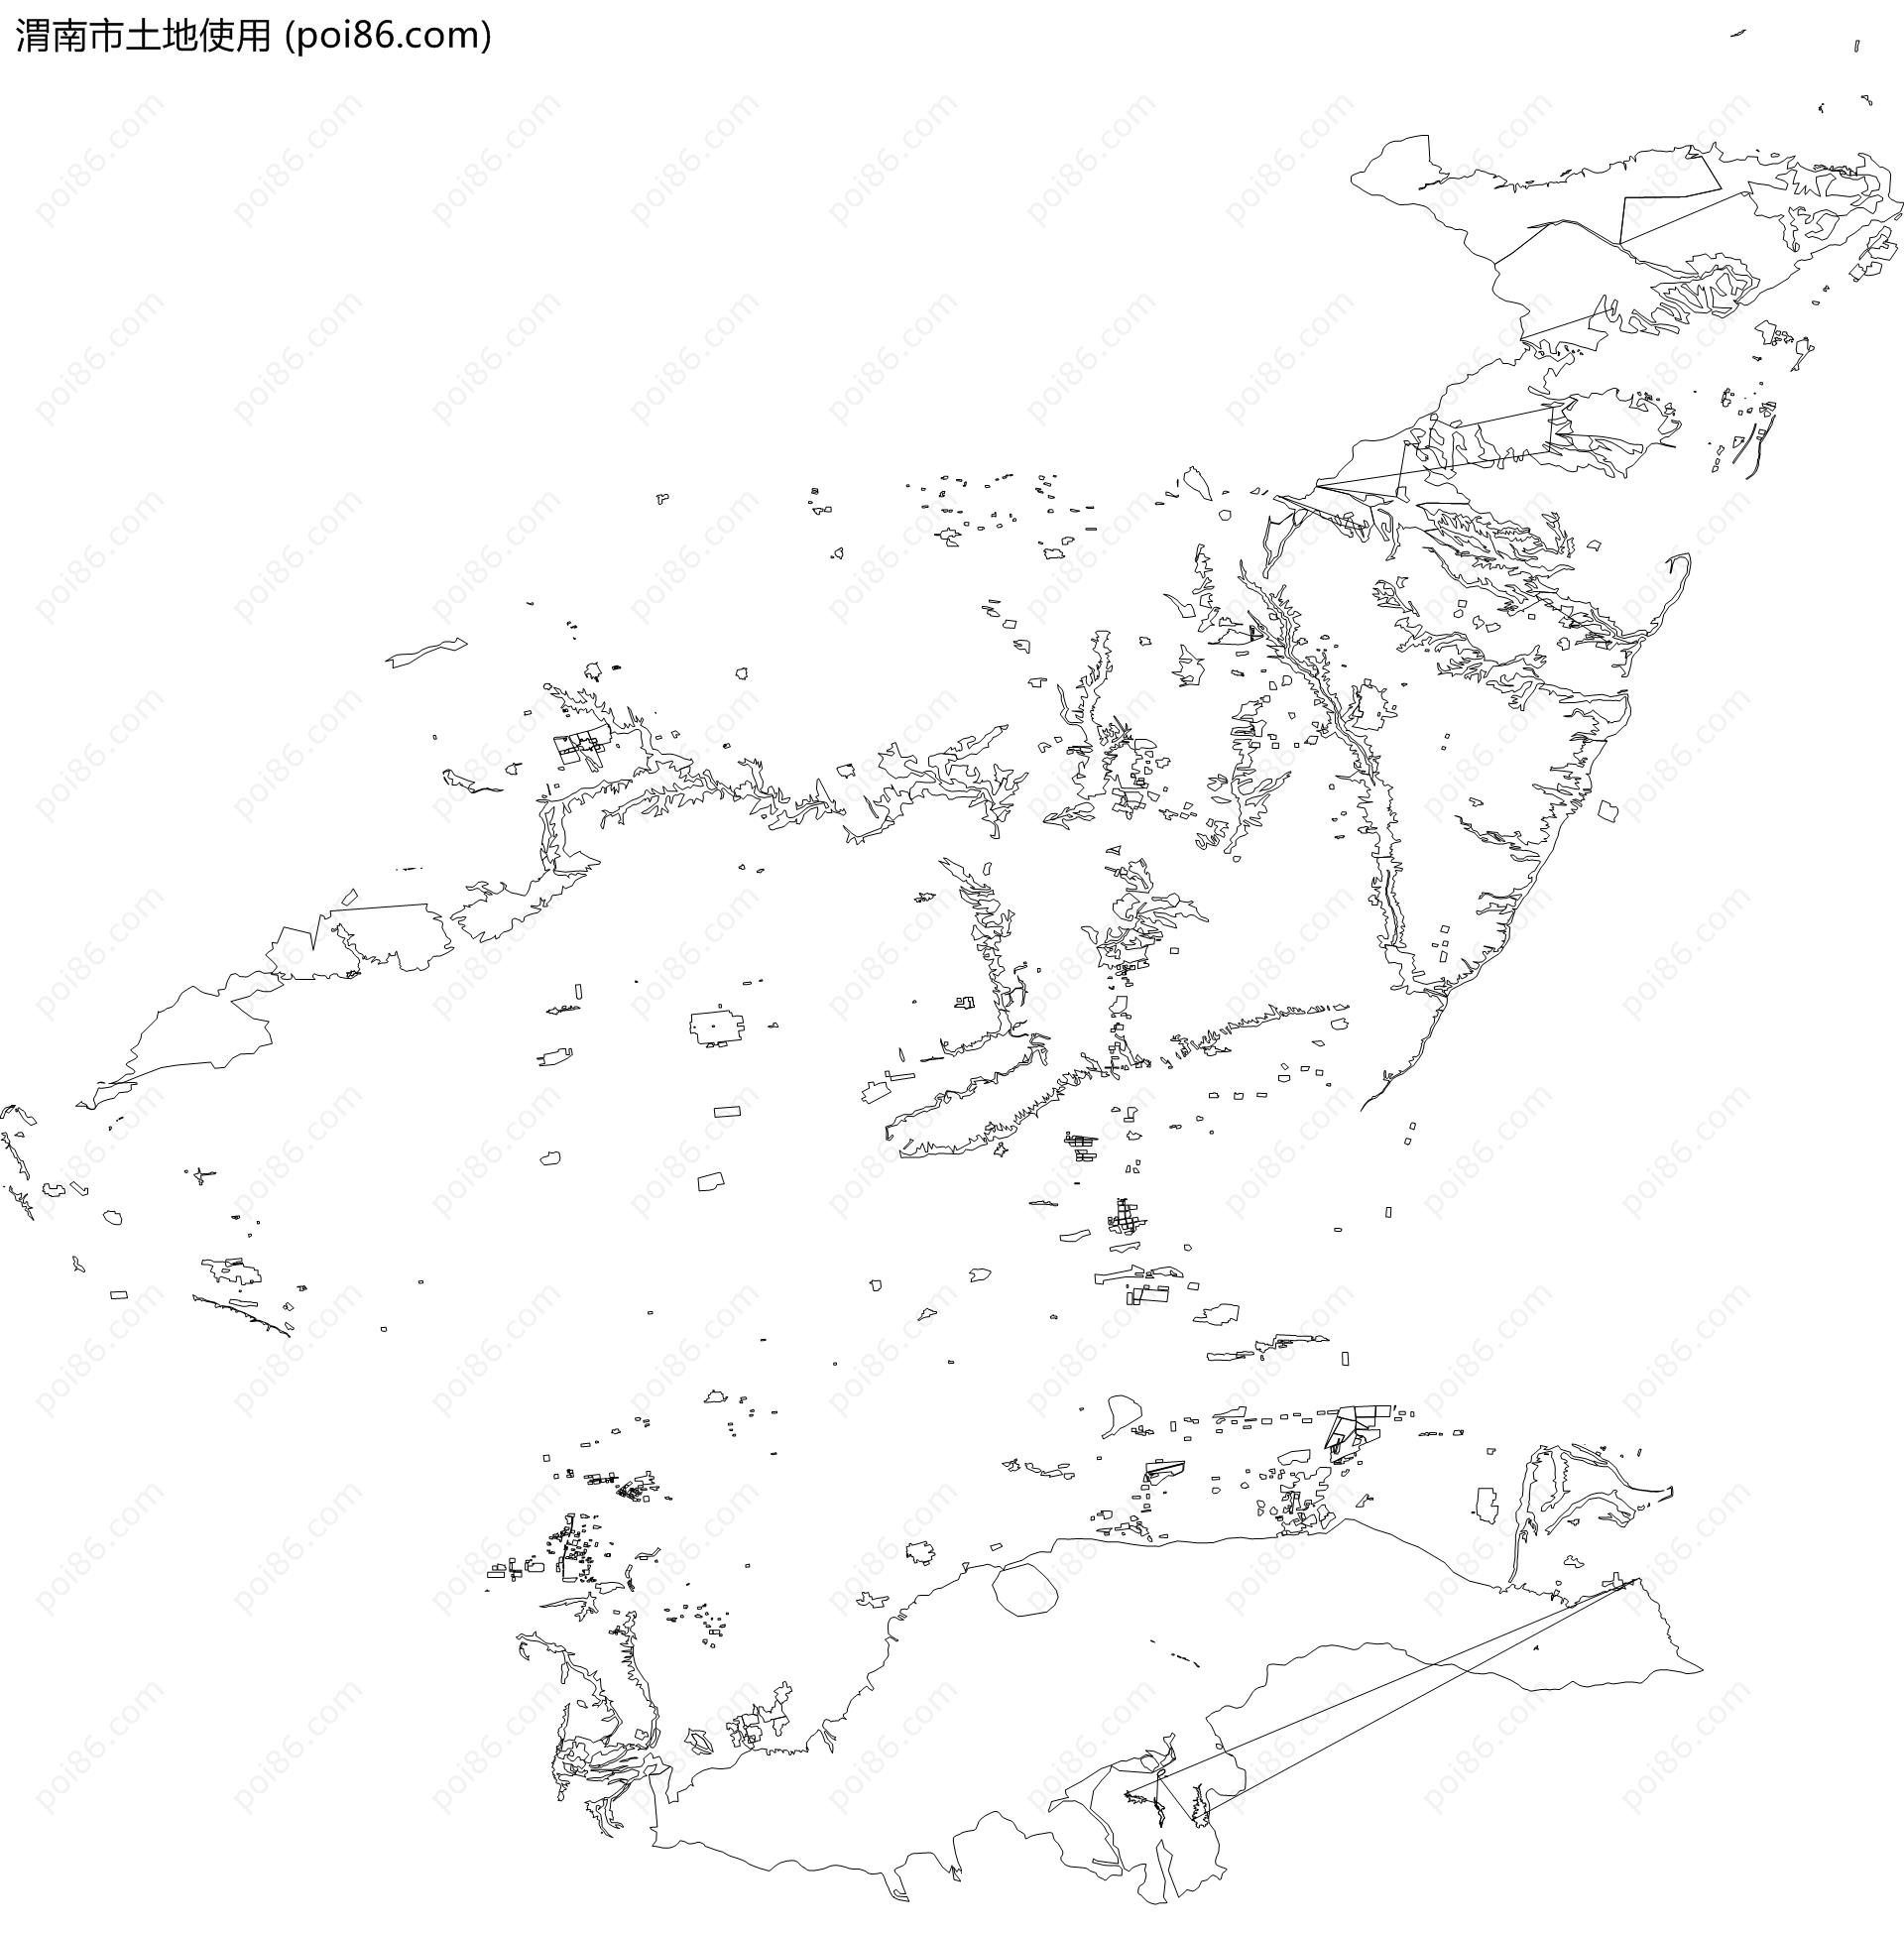 渭南市土地使用地图